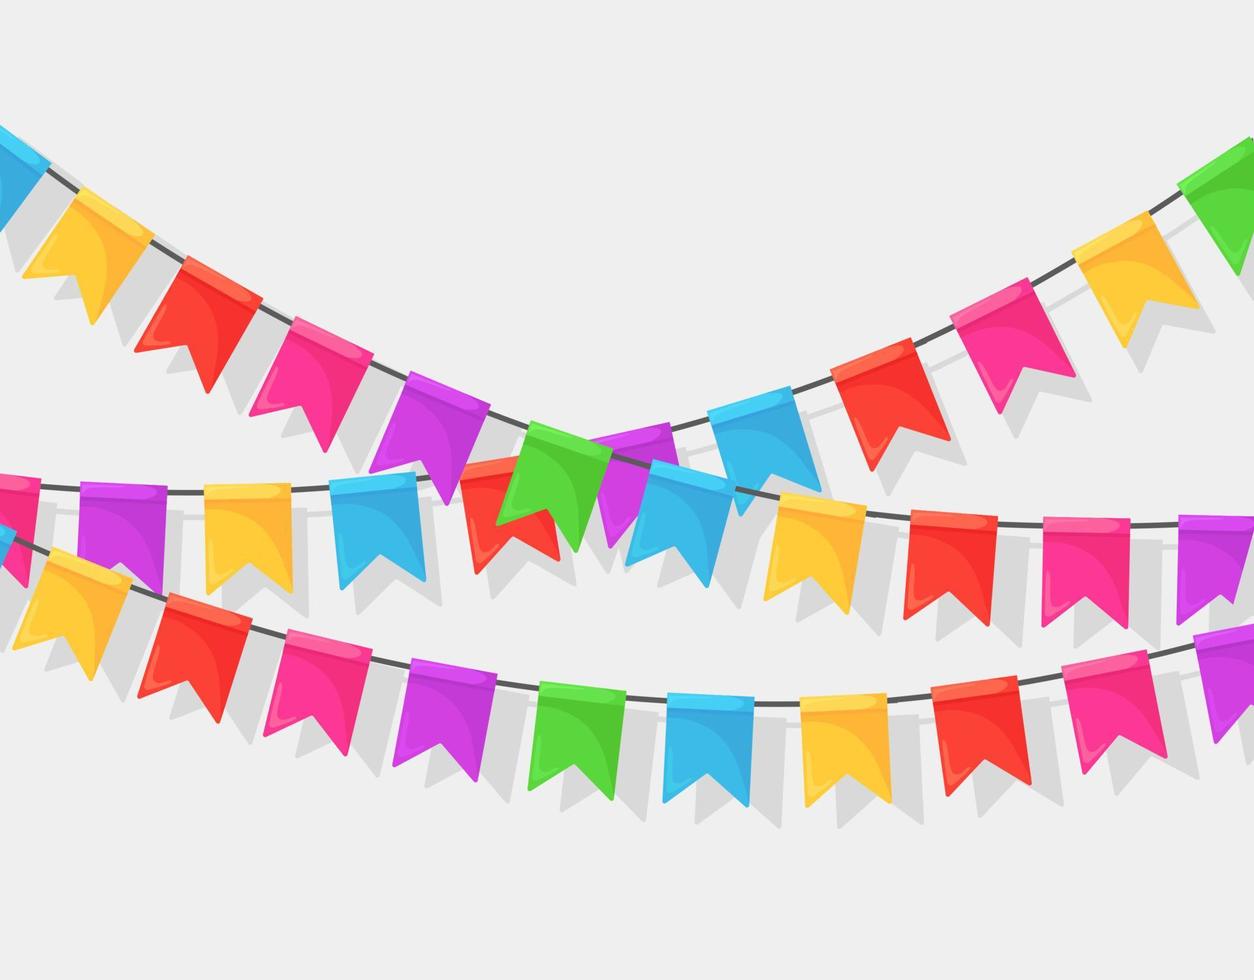 banner met slinger van kleur festival vlaggen en linten, bunting geïsoleerd op een witte achtergrond. decoratie, symbolen voor het vieren van een gelukkig verjaardagsfeestje, carnaval, kermis. vector plat ontwerp